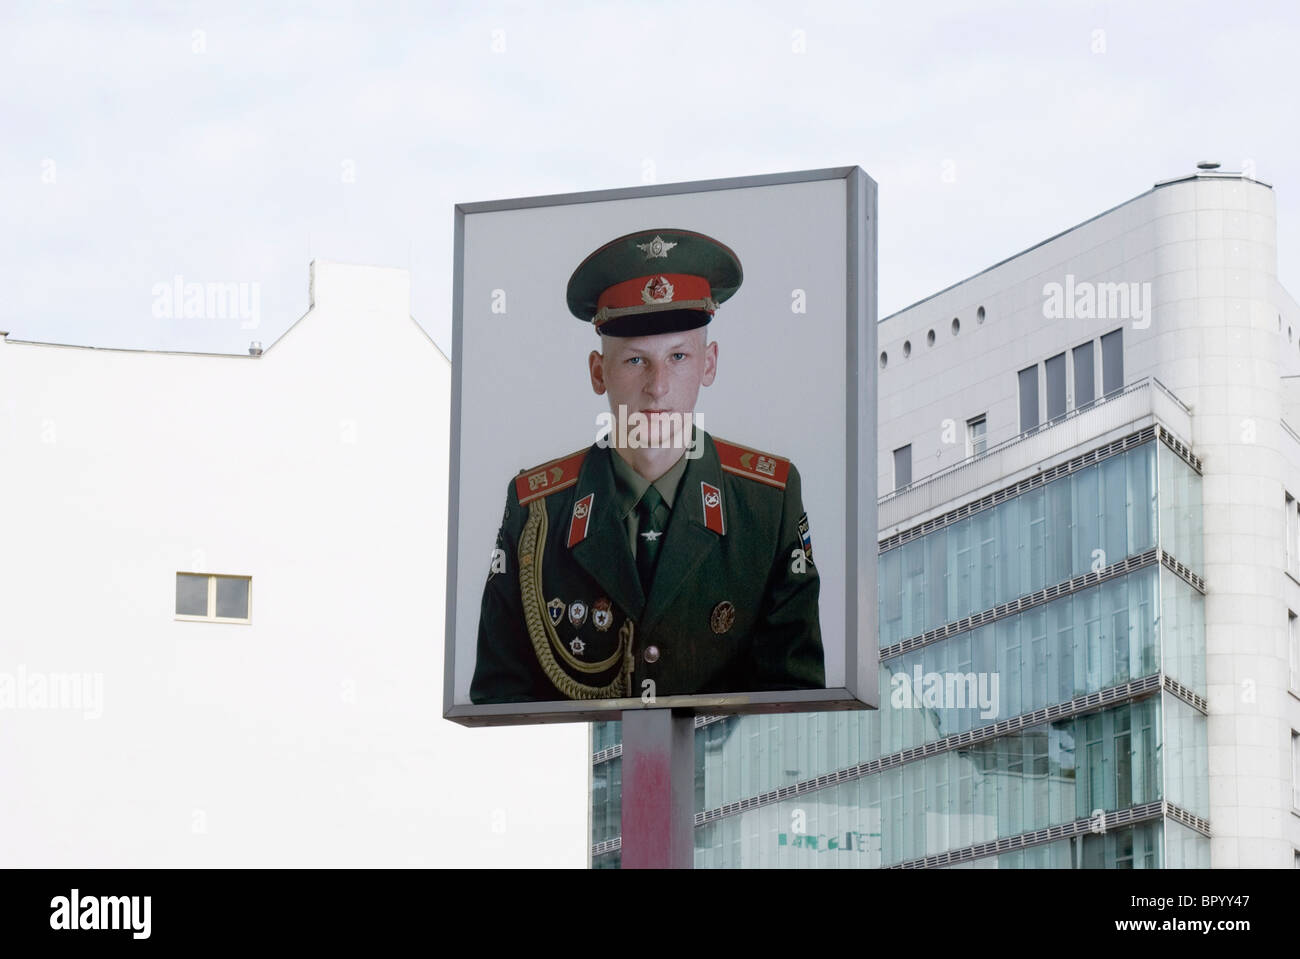 Deutschland, Berlin, Friedrichstraße, Checkpoint Charlie, russischer Soldat Gedenk Plakat Stockfoto